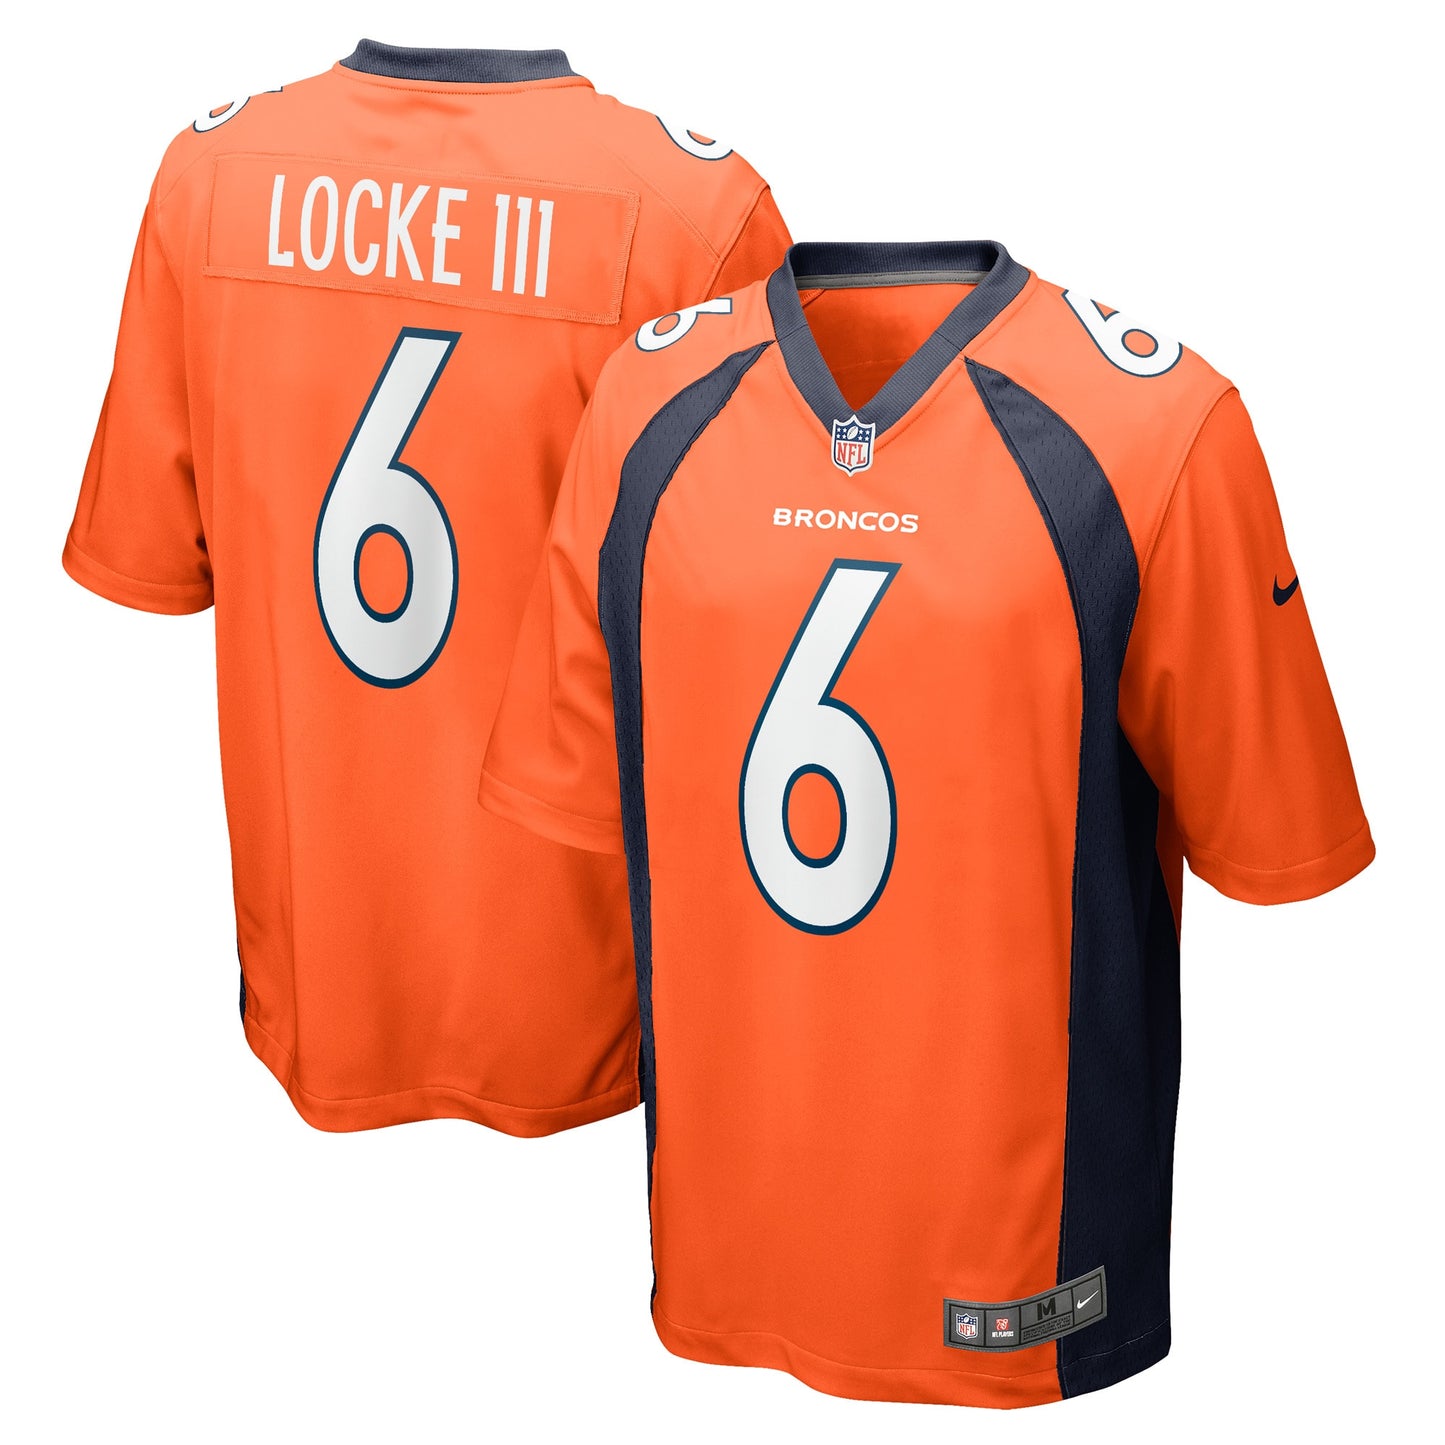 P.J. Locke Denver Broncos Nike Game Player Jersey - Orange